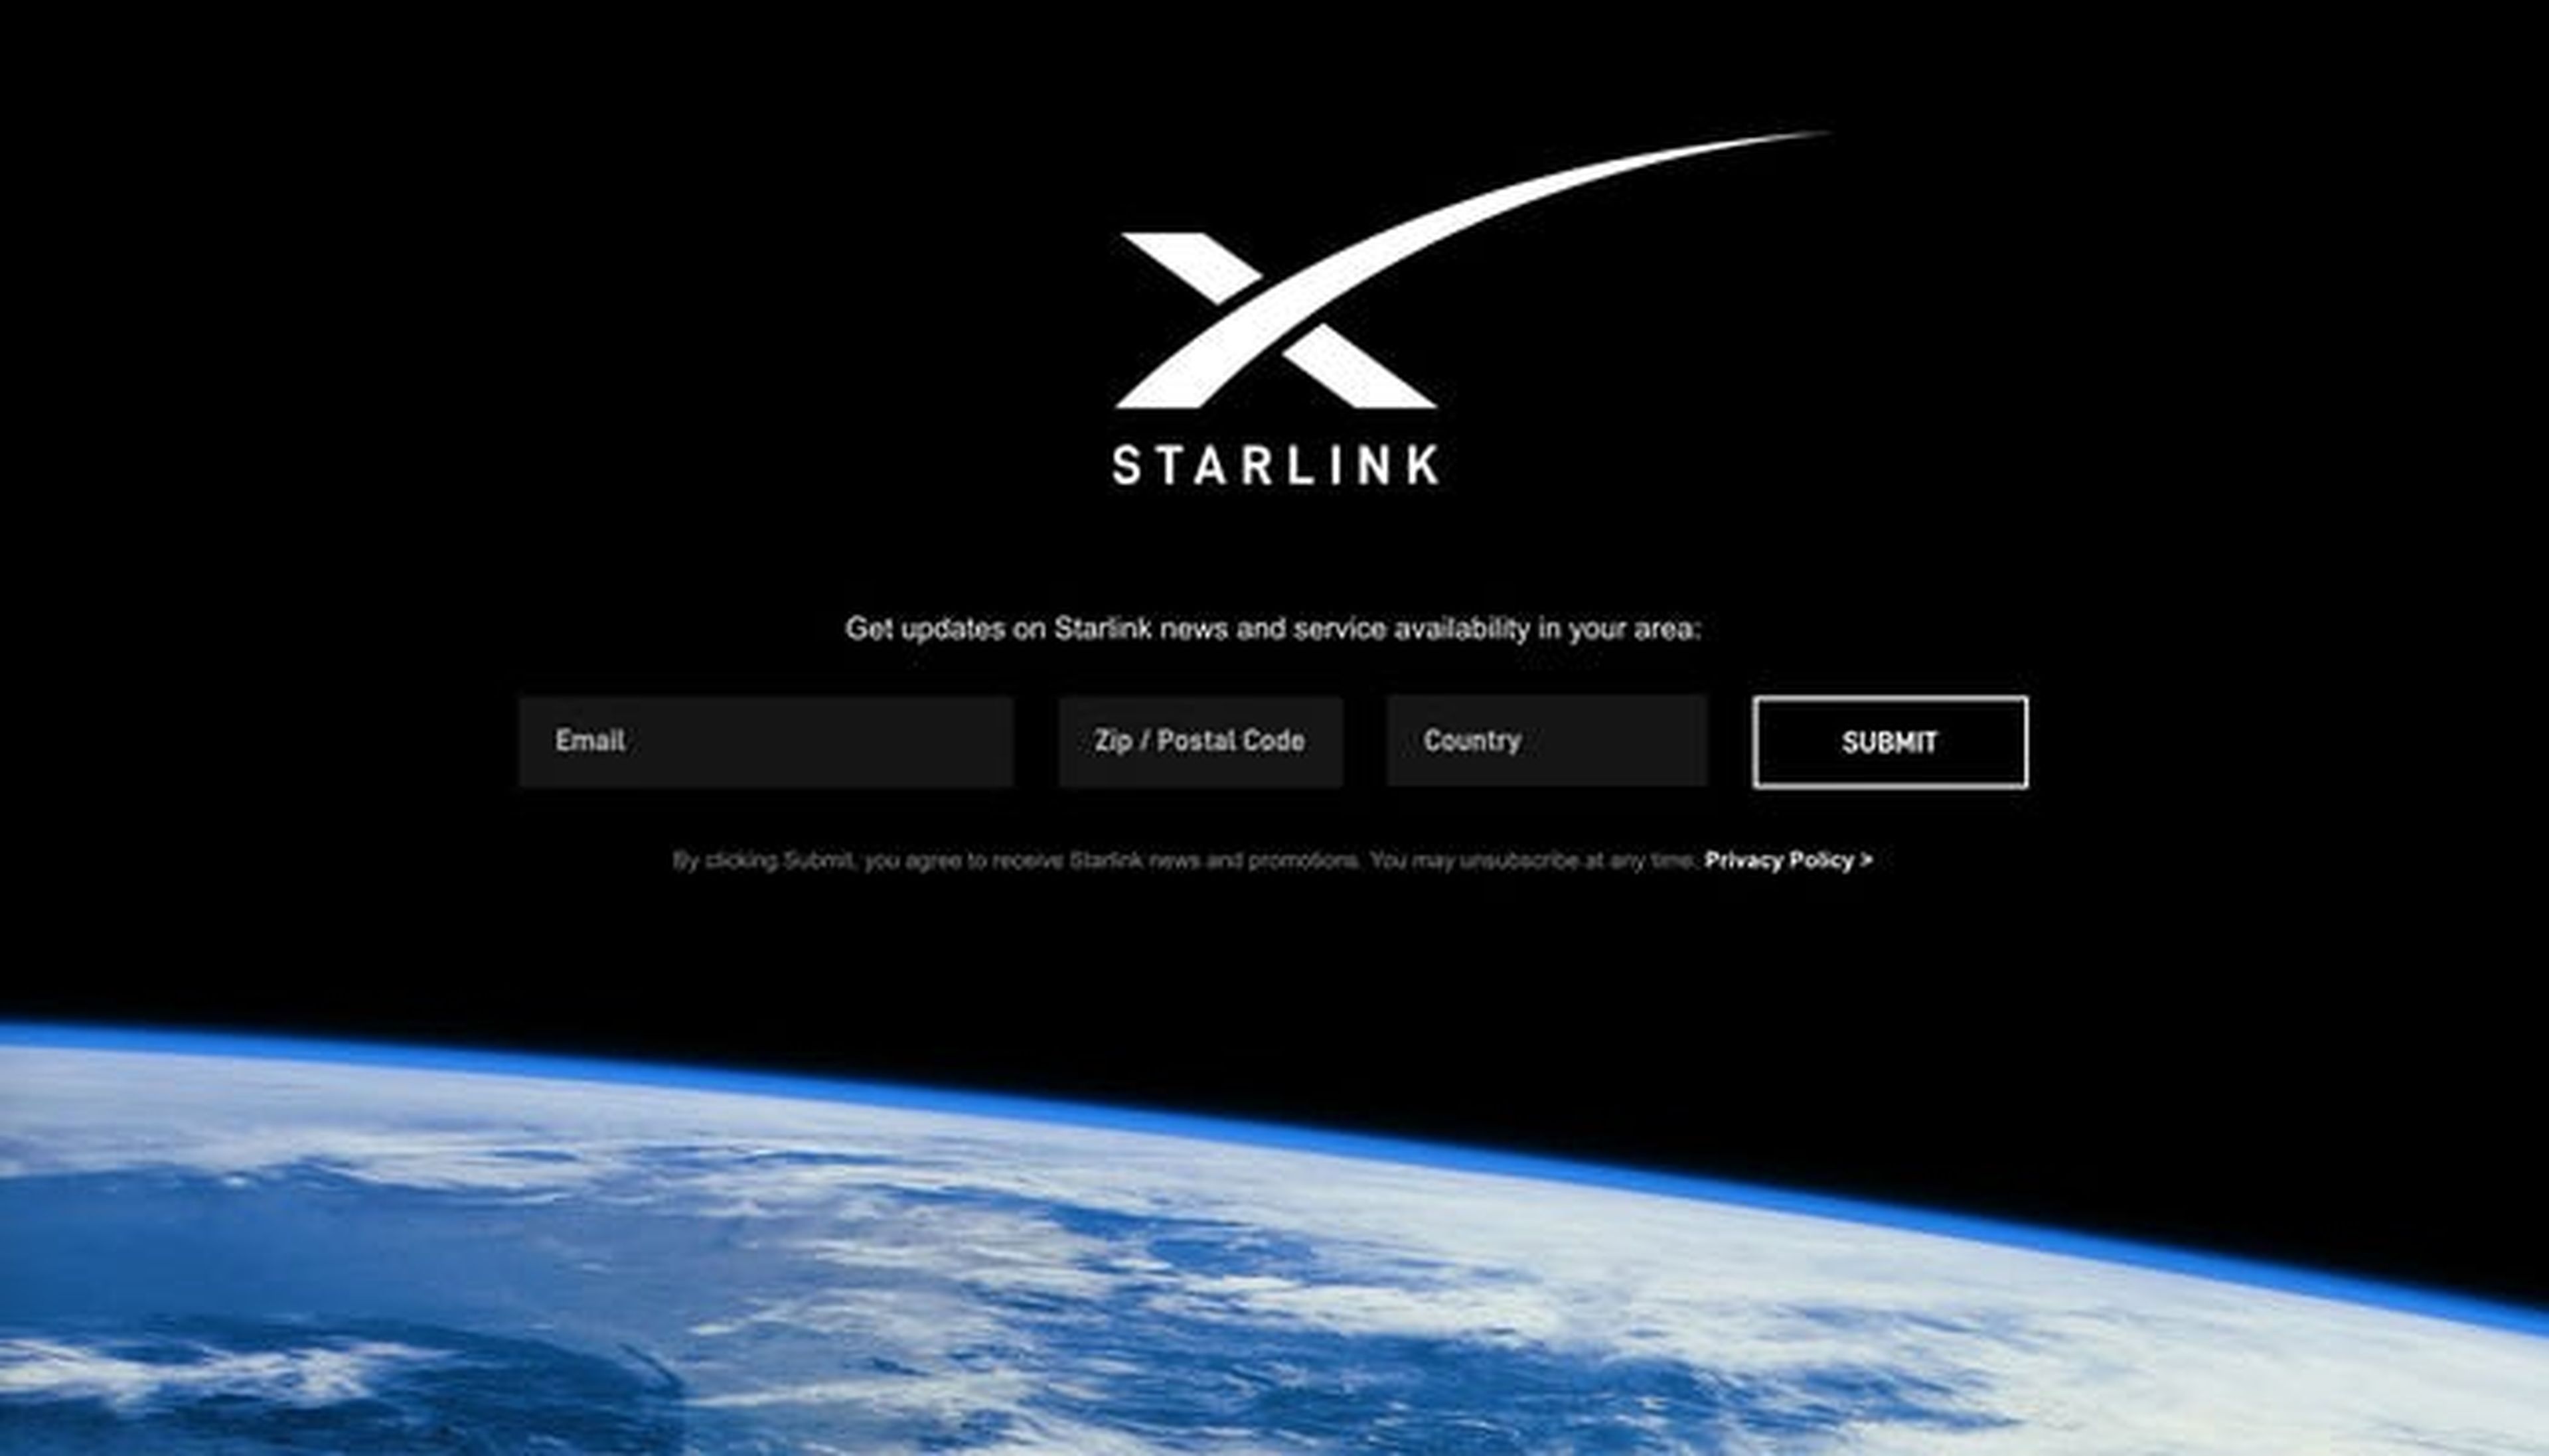 Captura de pantalla del formulario de SpaceX en la página web de Starlink.com